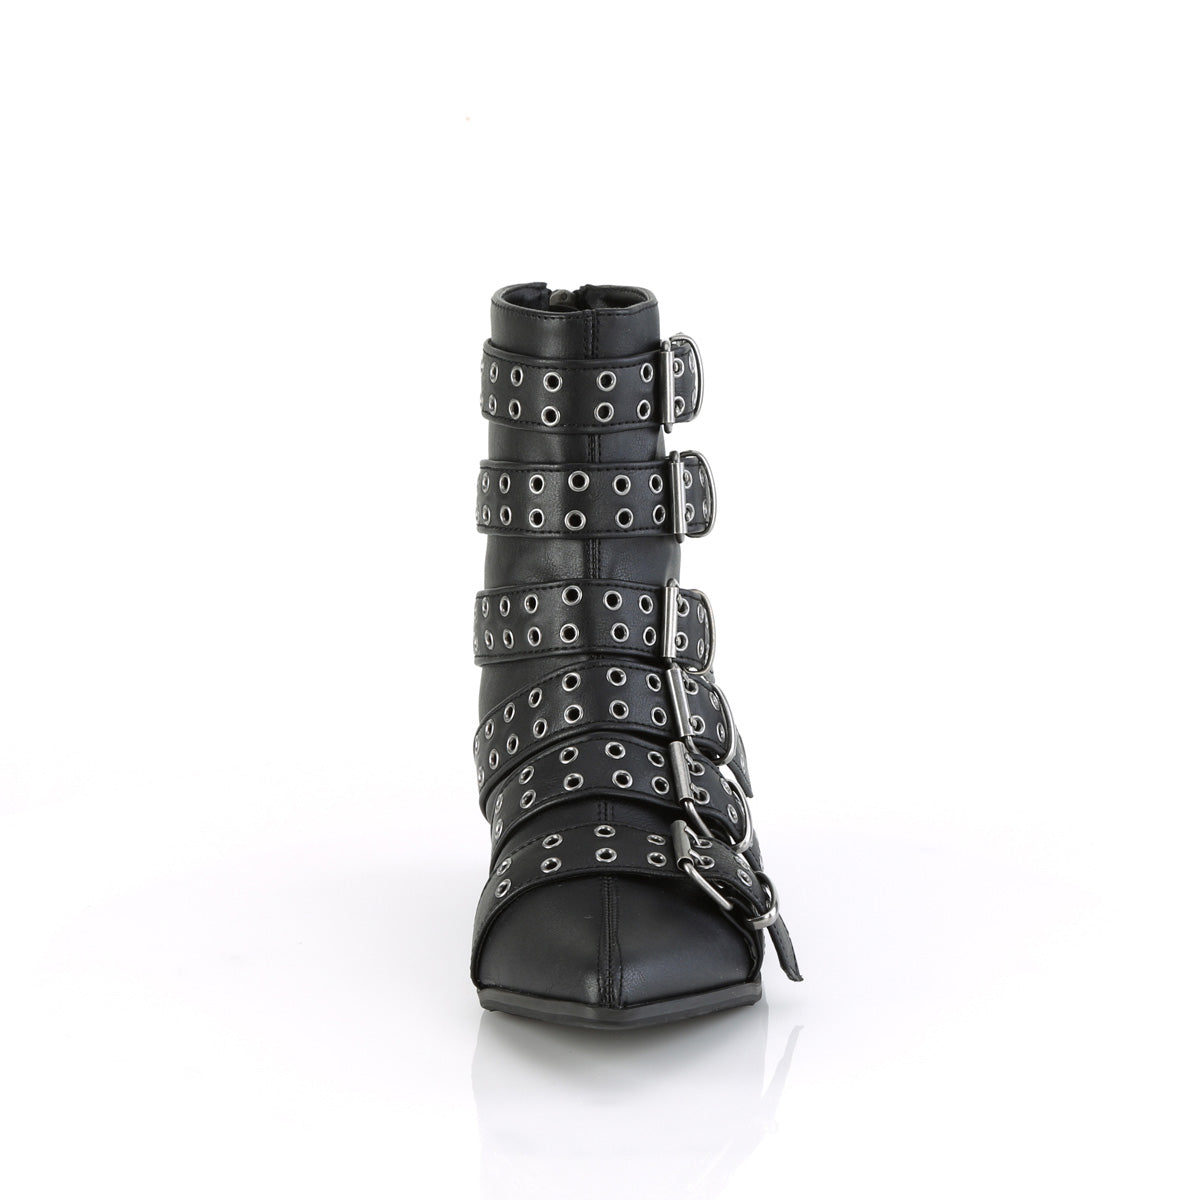 WARLOCK-70 Black Vegan Leather Calf Boot Demonia